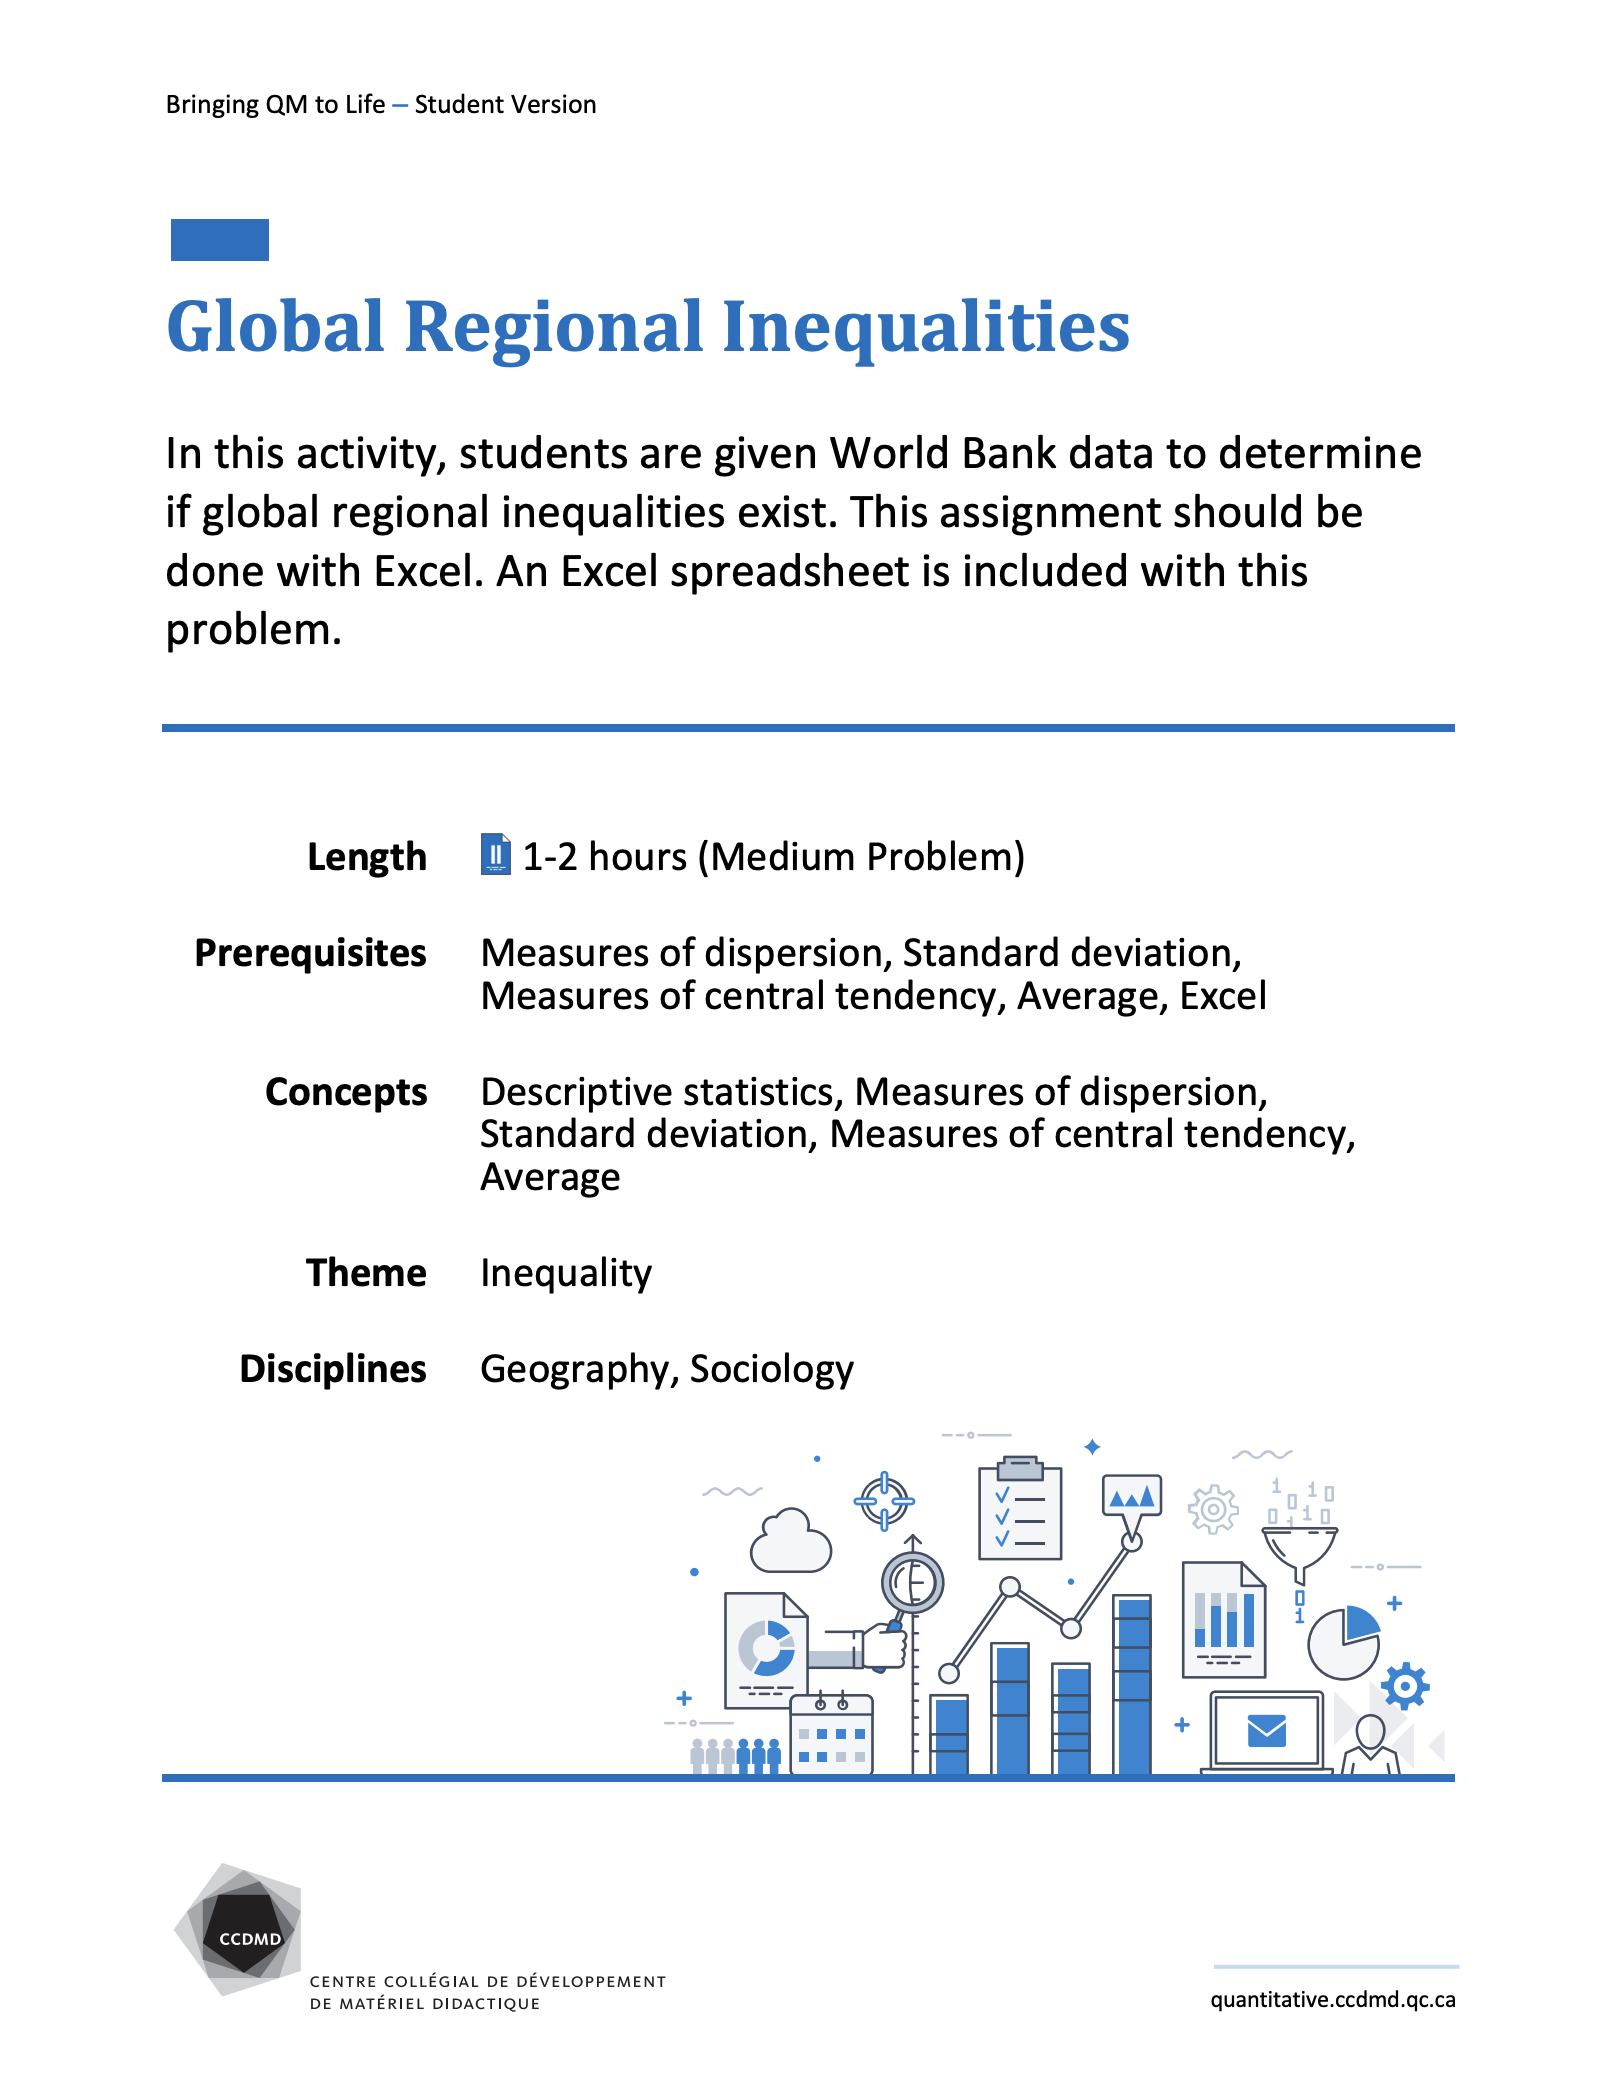 Global Regional Inequalities